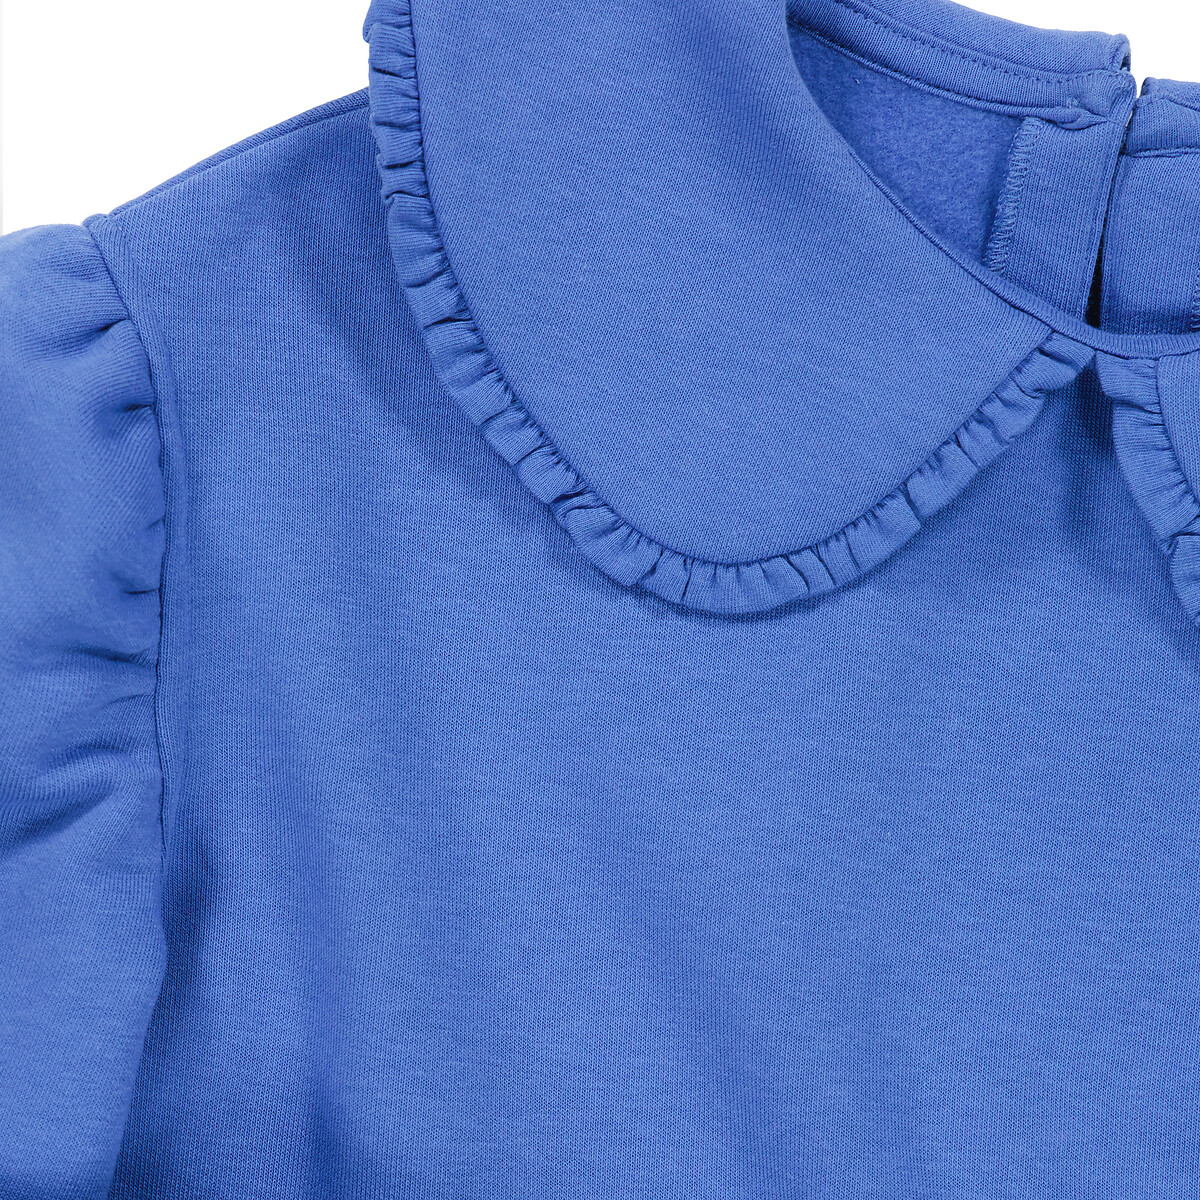 Платье Прямое с закругленным отложным воротником из мольтона 10 лет - 138 см синий LaRedoute, размер 10 лет - 138 см - фото 5